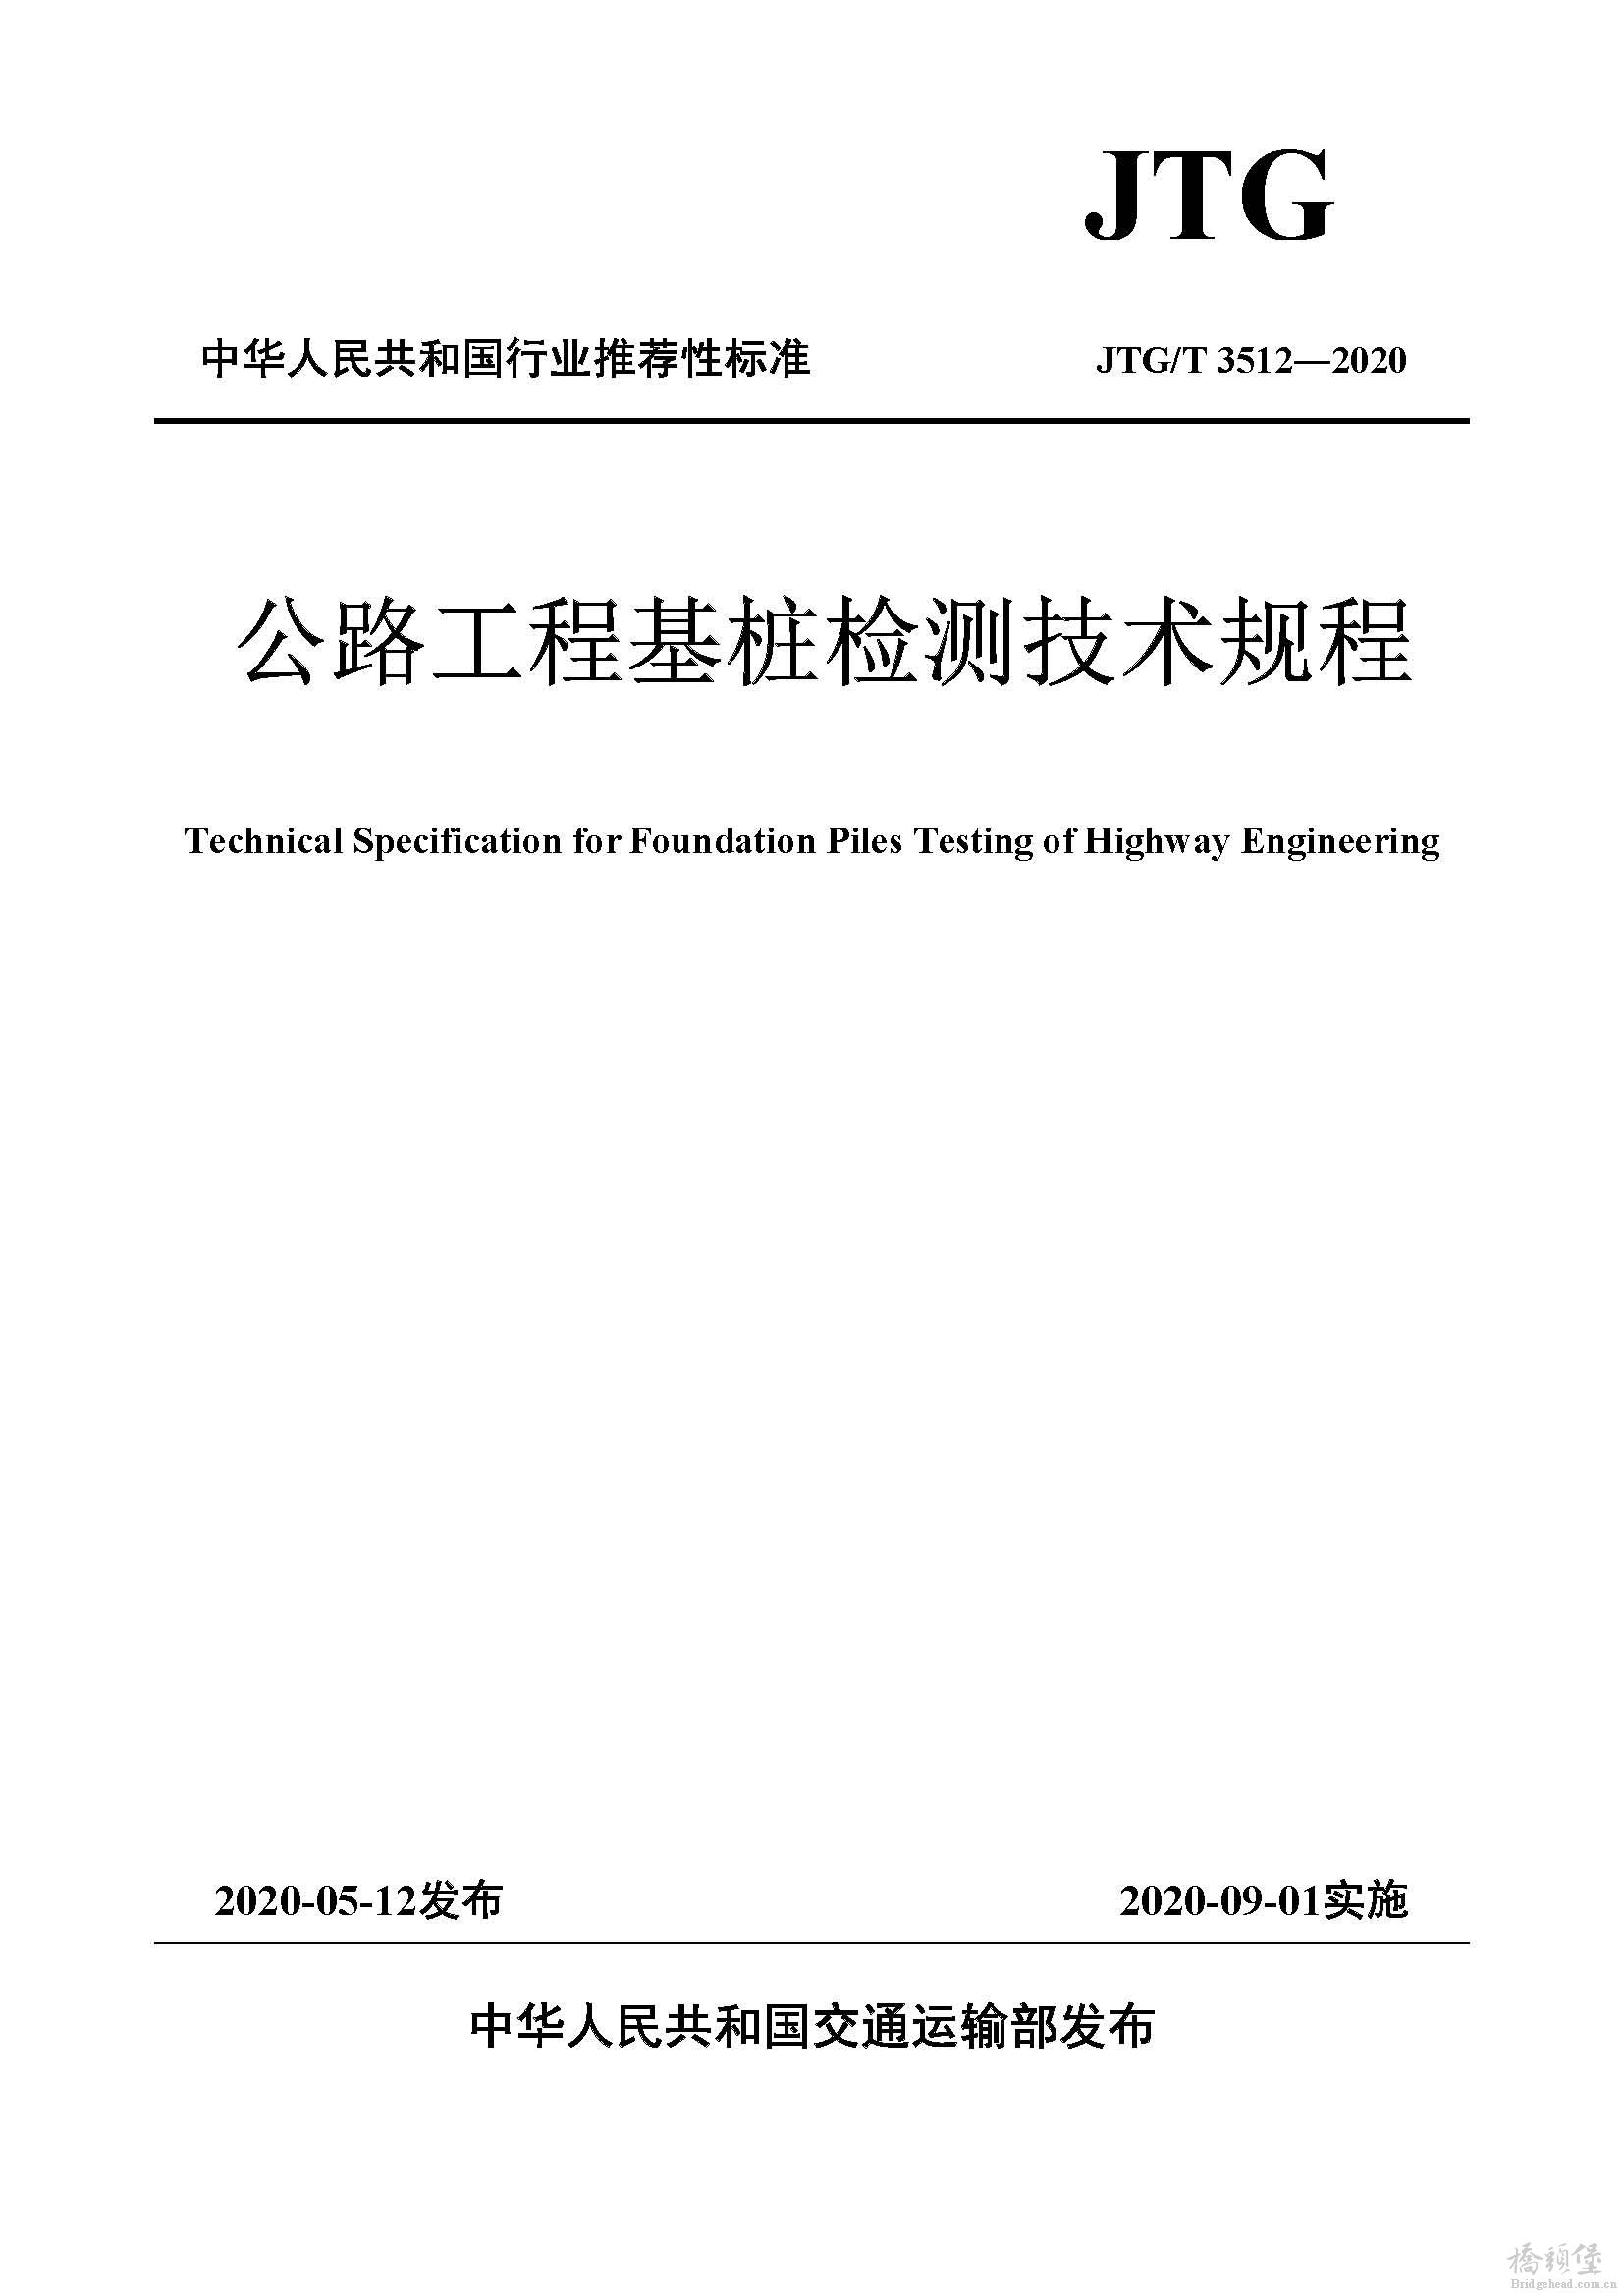 页面提取自－JTG.T 3512-2020公路工程基桩检测技术规程.jpg